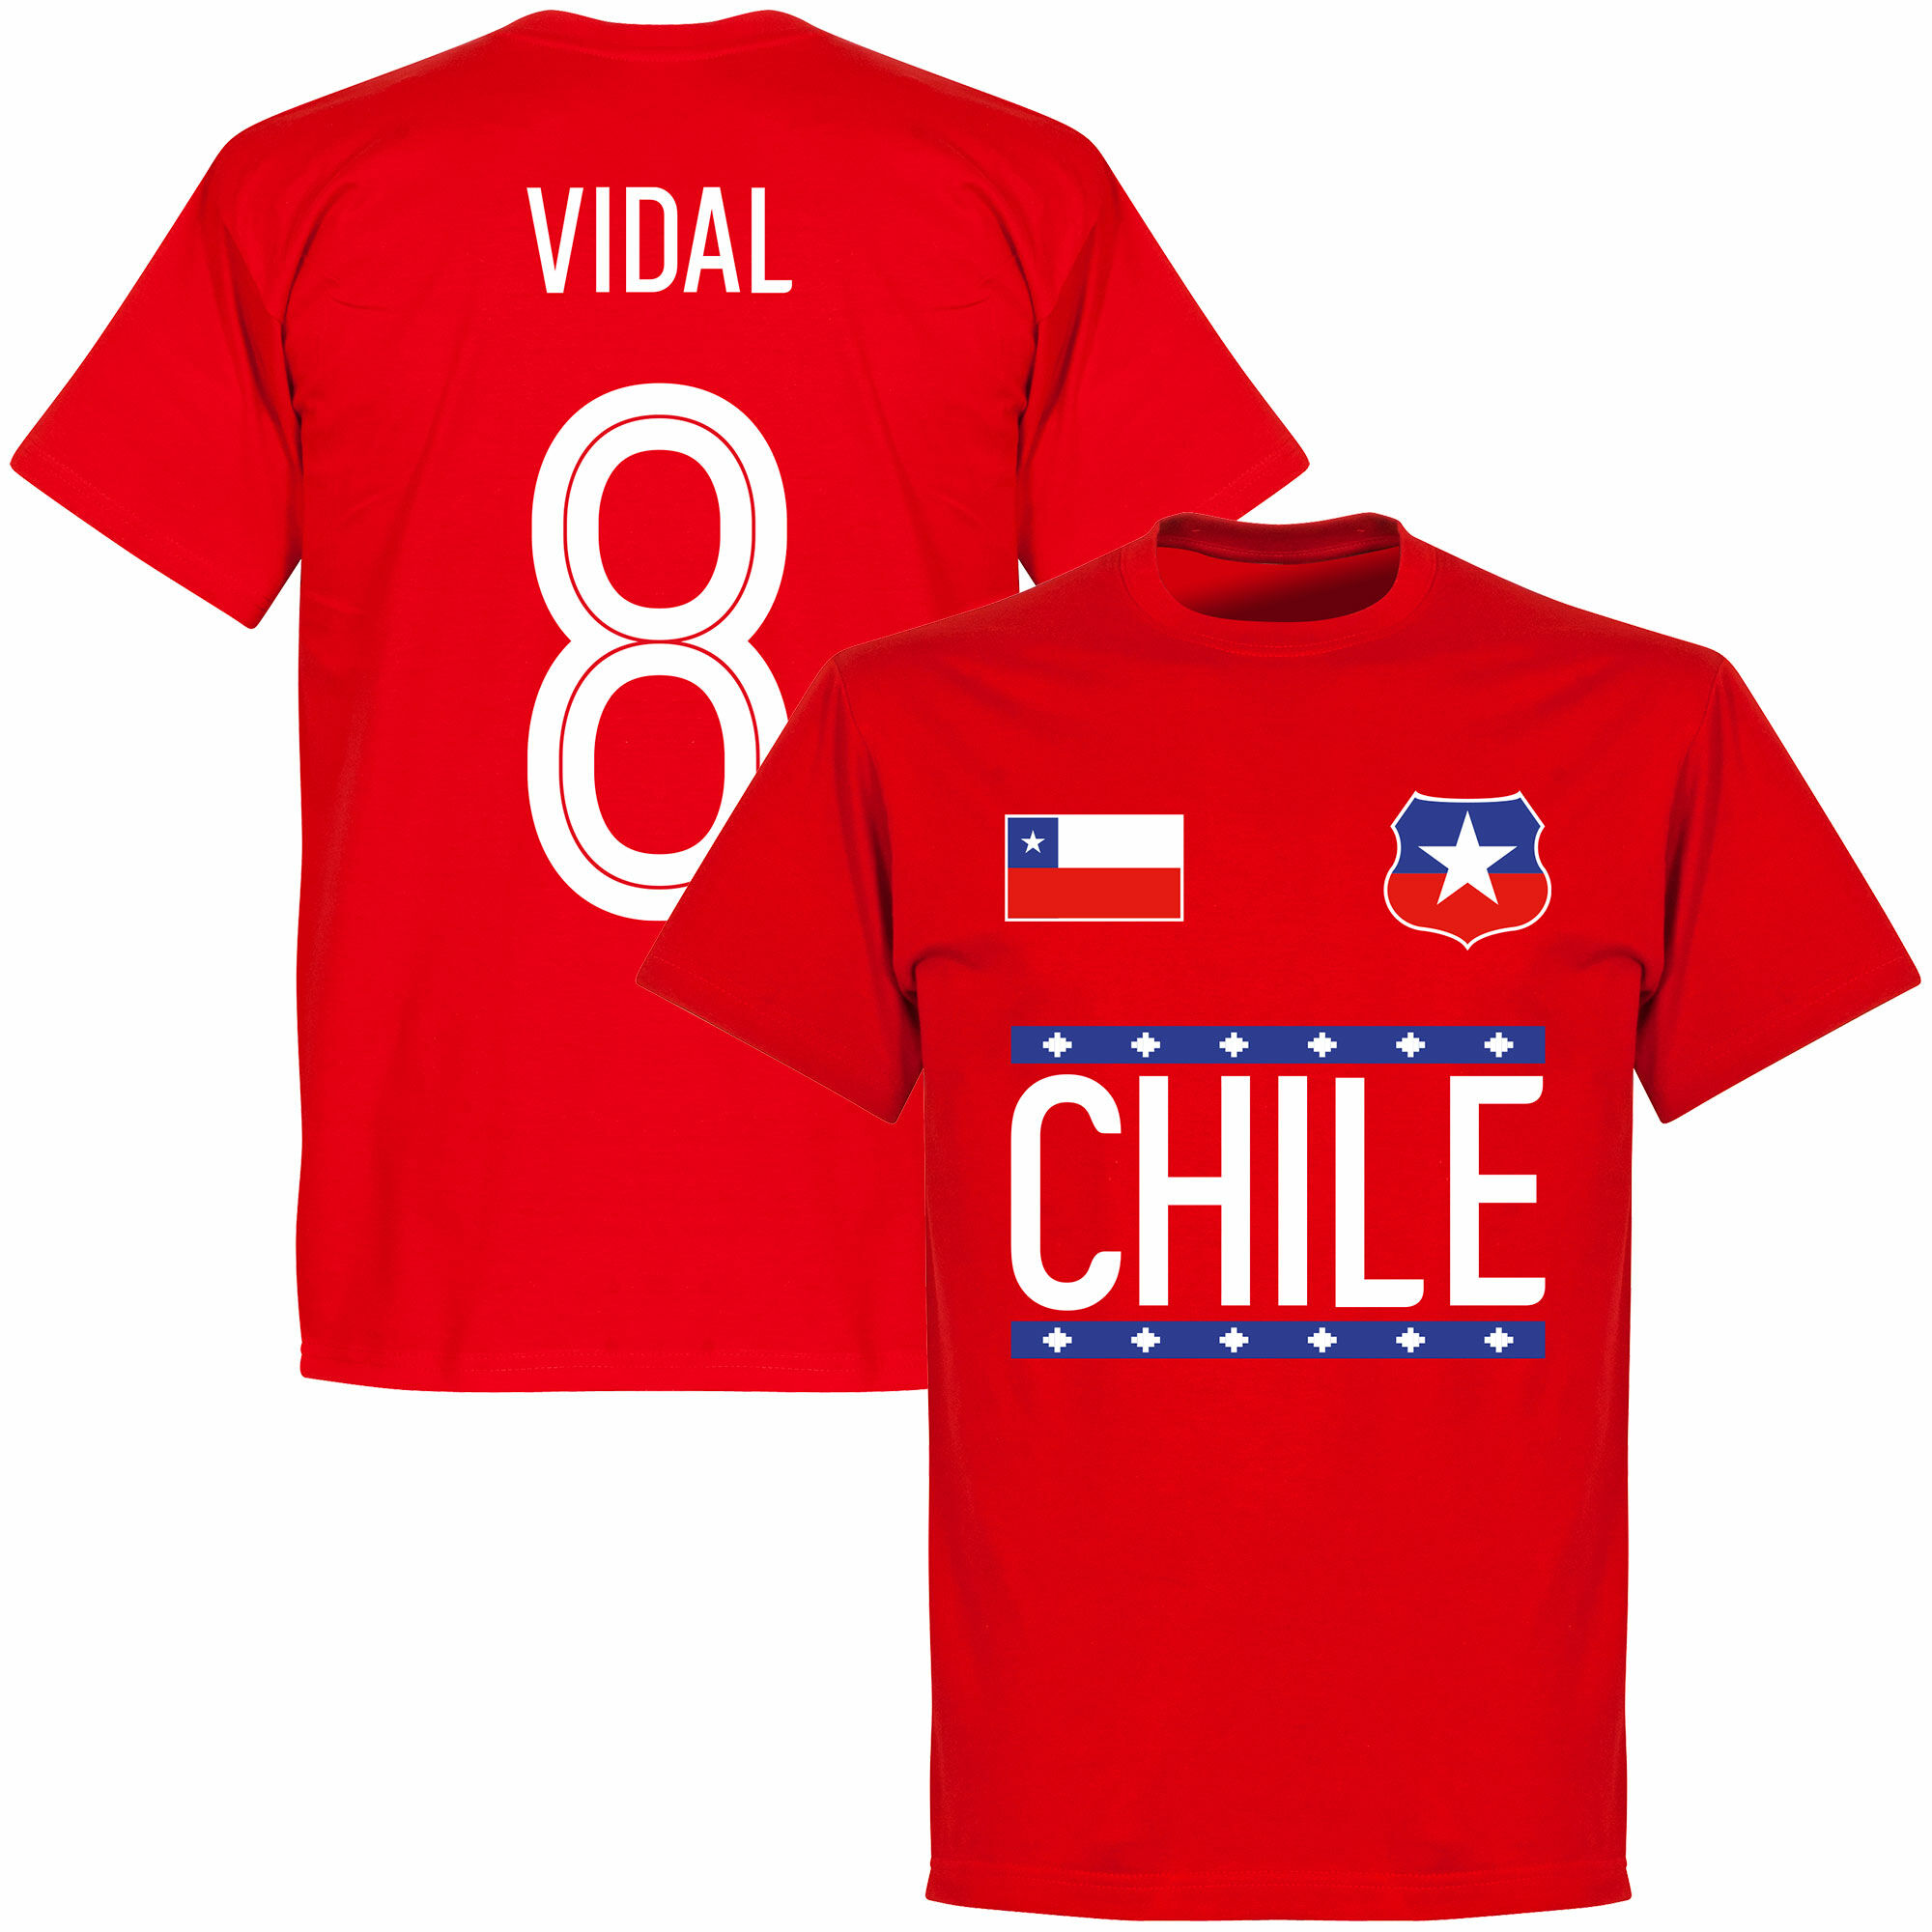 Chile - Tričko - červené, Arturo Vidal, číslo 8